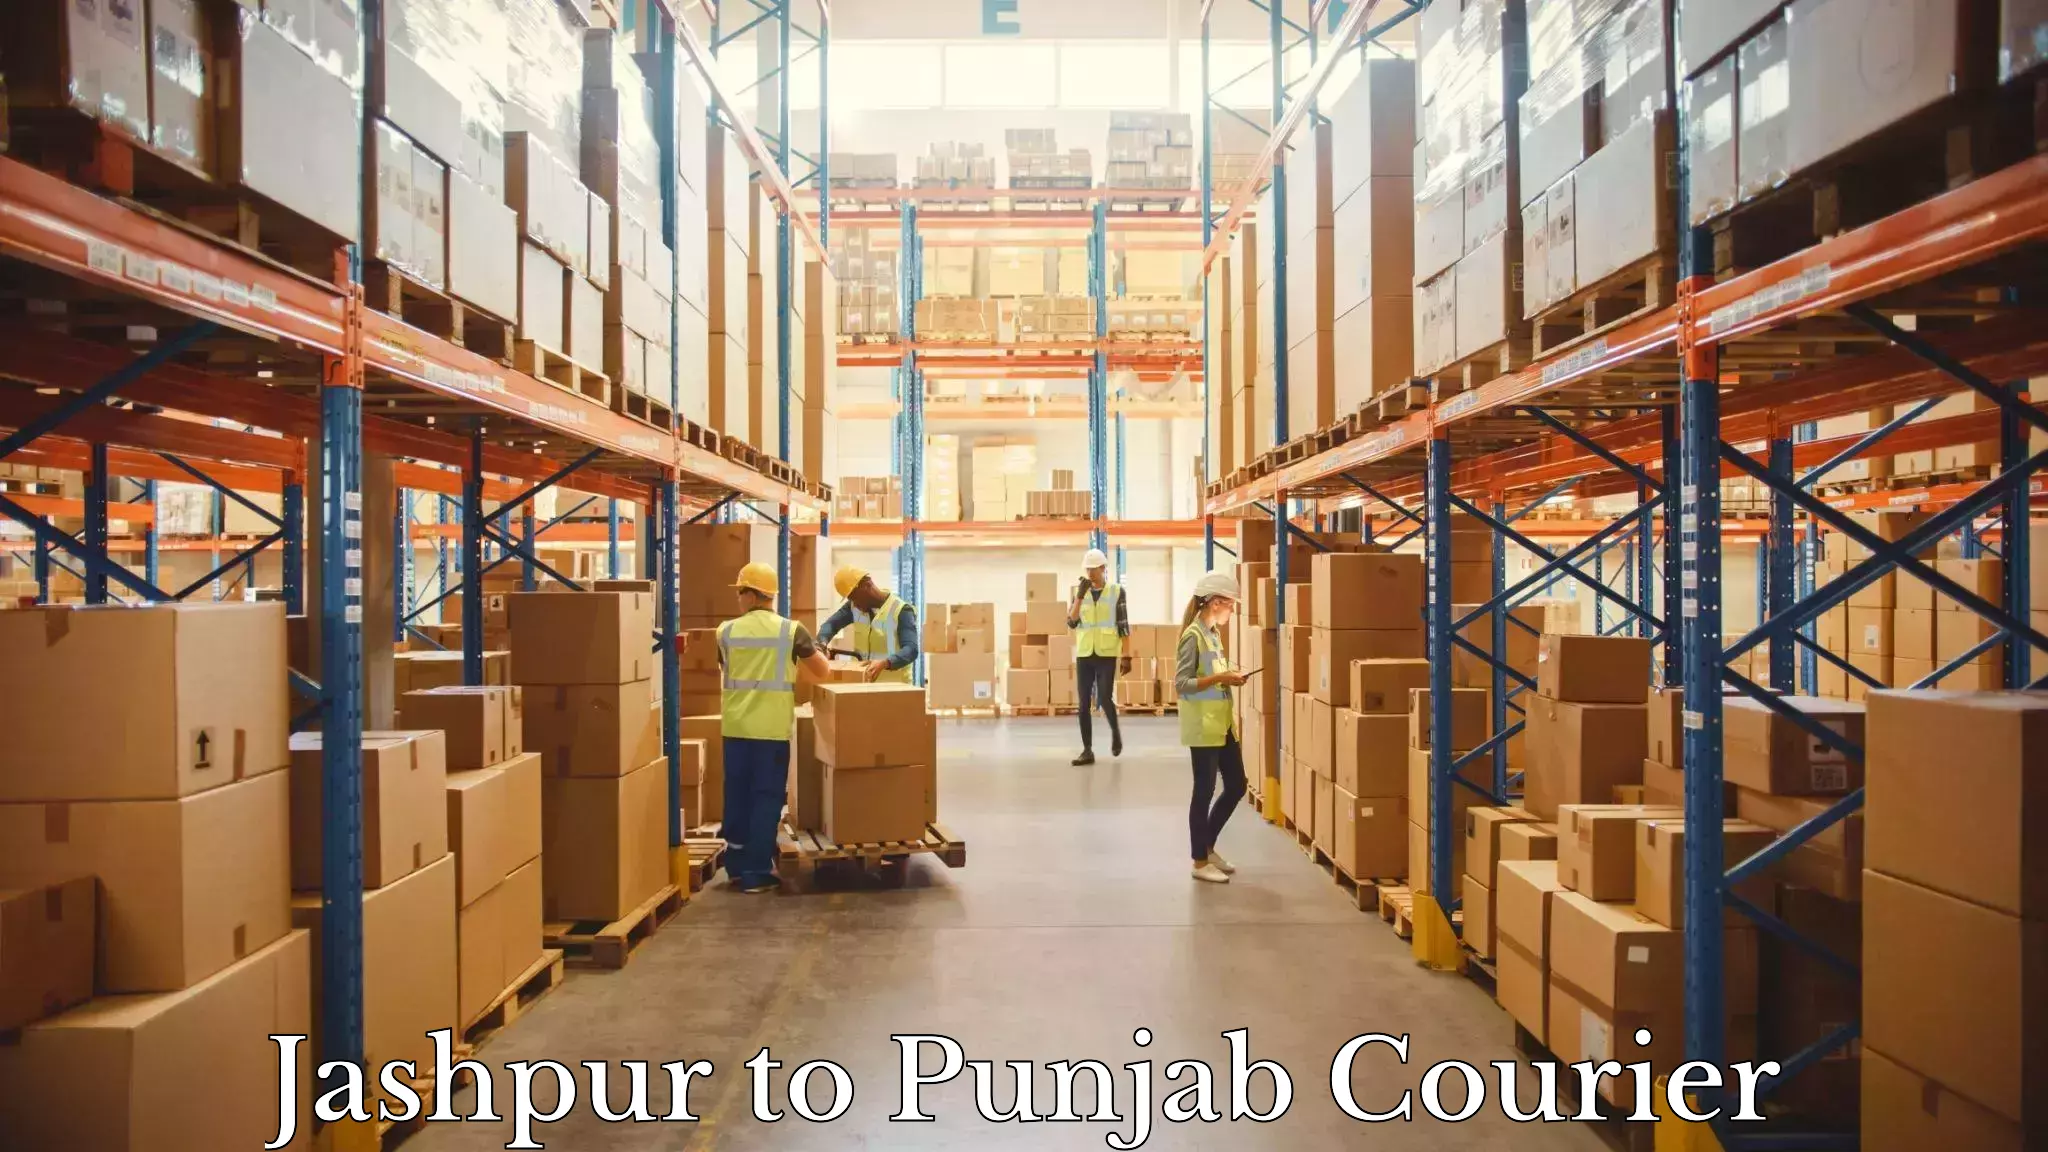 Optimized delivery routes Jashpur to Central University of Punjab Bathinda